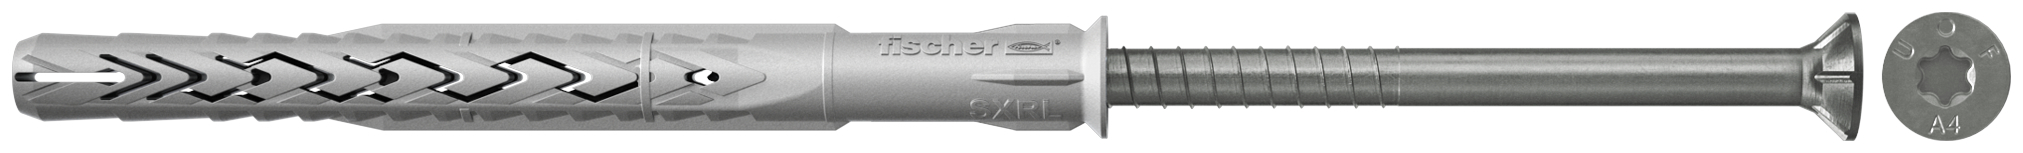 fischer Tasselli prolungati SXRL 10X140 T A4 (1 Pz.) Tassello prolungato in nylon con marcatura CE con vite premontata in acciaio inox A4, T.S.P. impronta torx fie2378